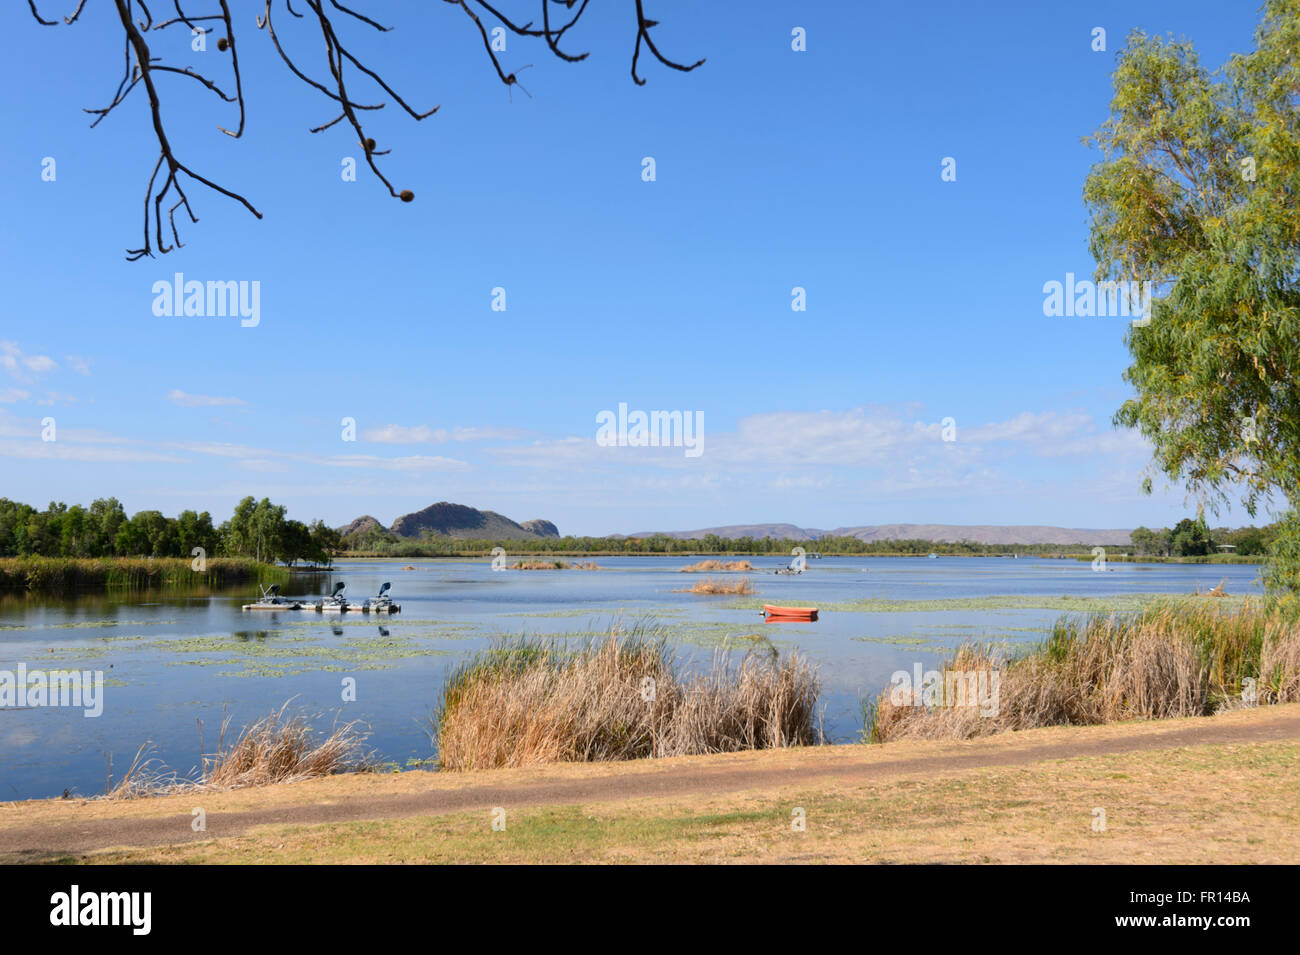 Le lac Kununurra par l'homme, Ord River, Australie occidentale Banque D'Images